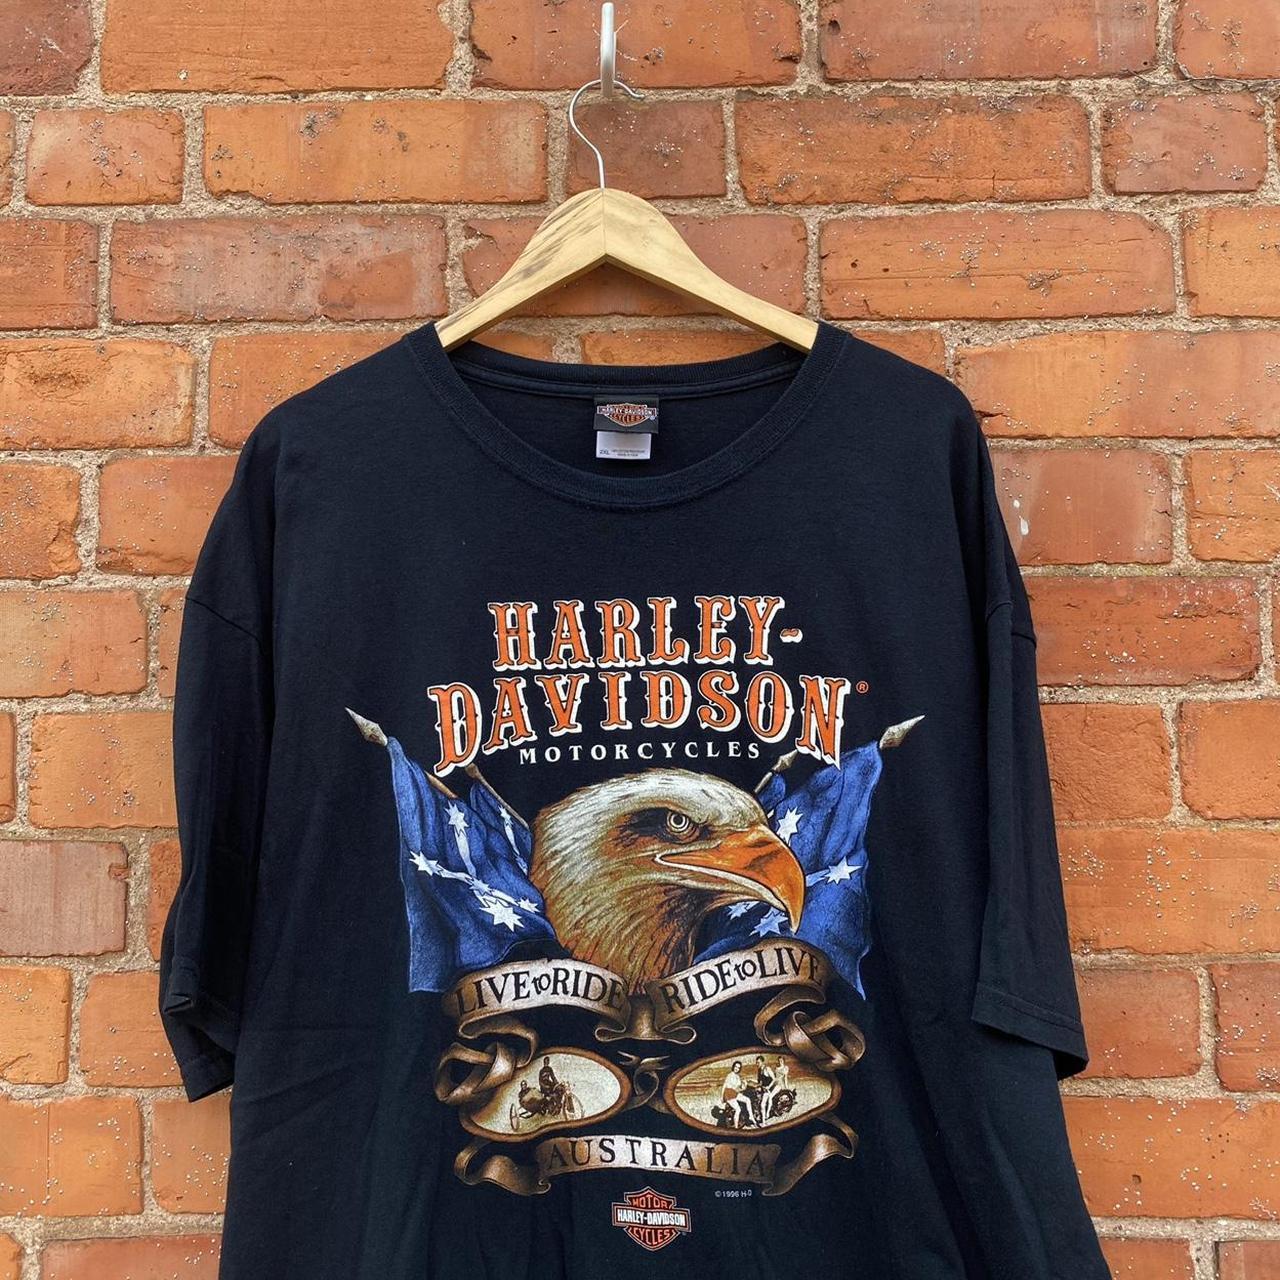 Vintage 1996 HARLEY DAVIDSON T shirt / TEE in a... - Depop